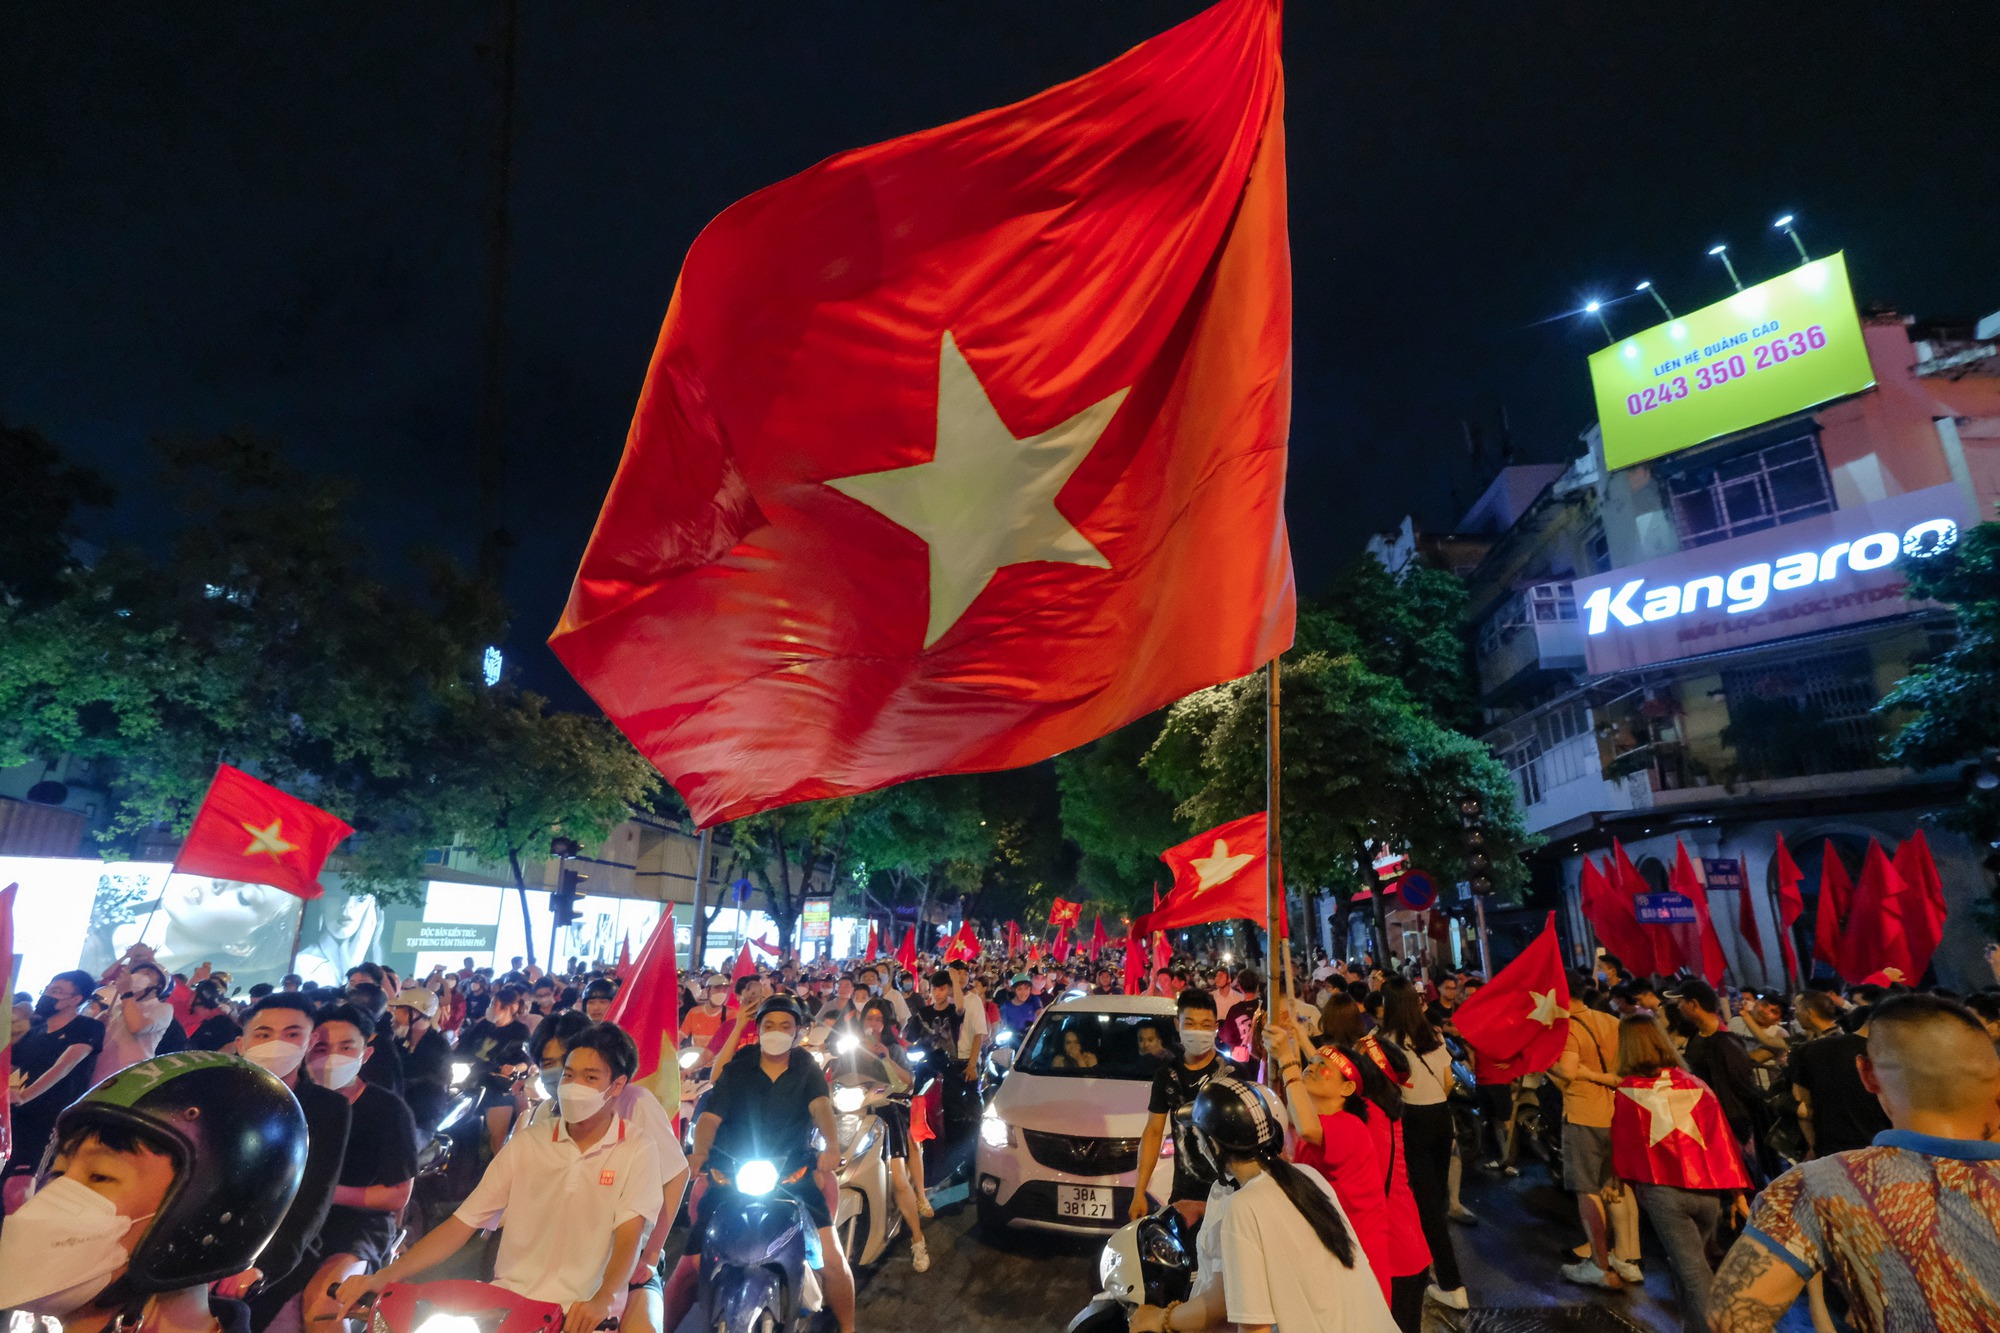 Đêm U23 Việt Nam giành HCV SEA Games trả món nợ với người Thái, người dân cả nước xuống đường nhuộm đỏ mọi tuyến phố - Ảnh 6.